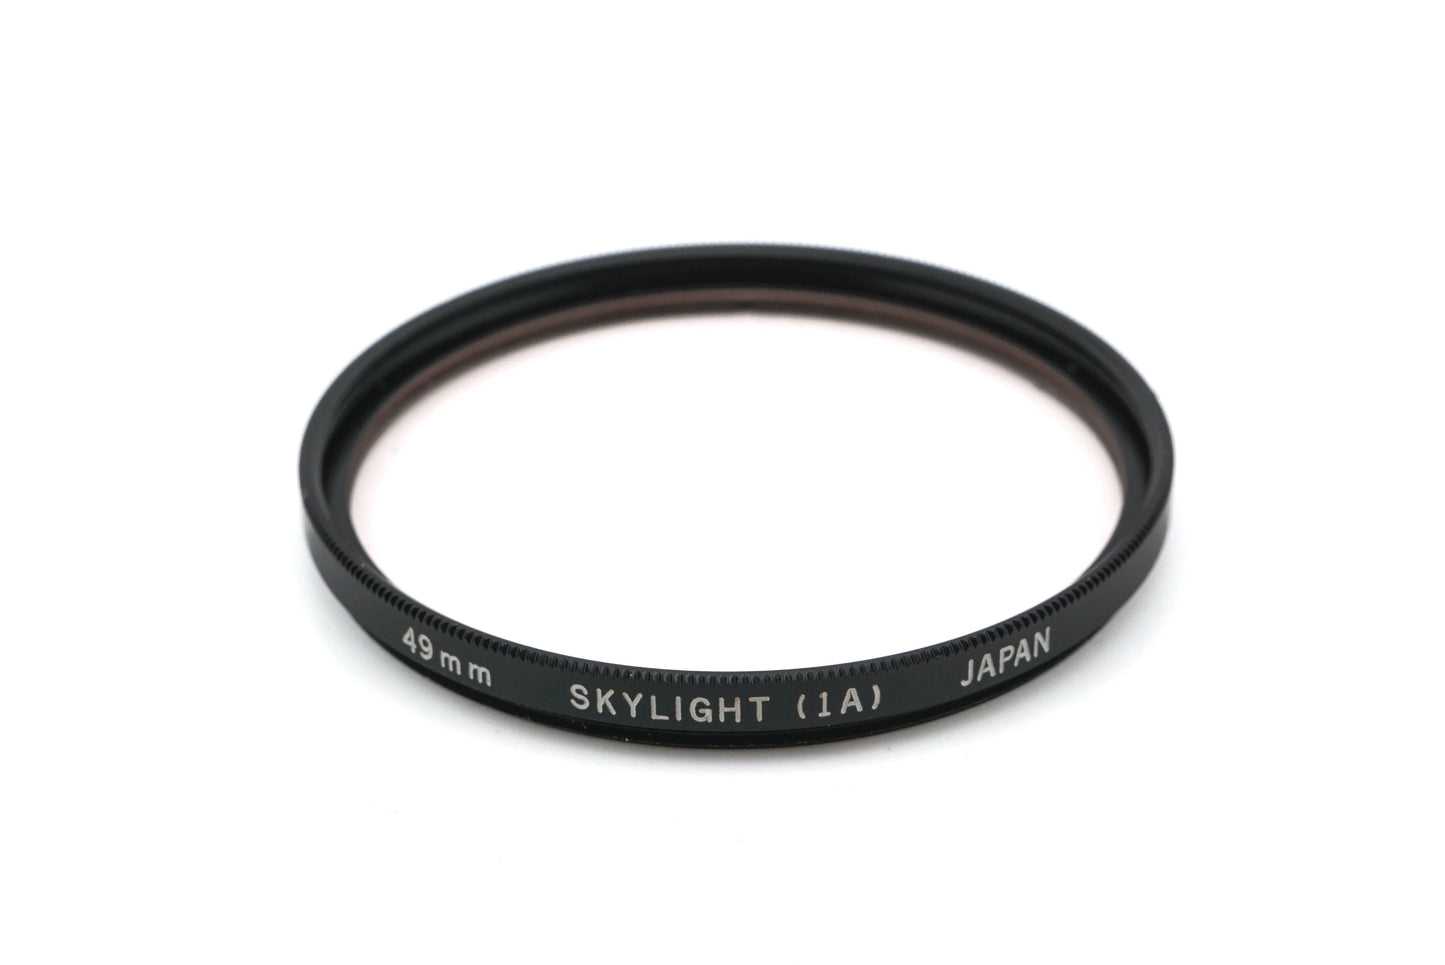 Olympus 49mm Skylight (1A) Filter